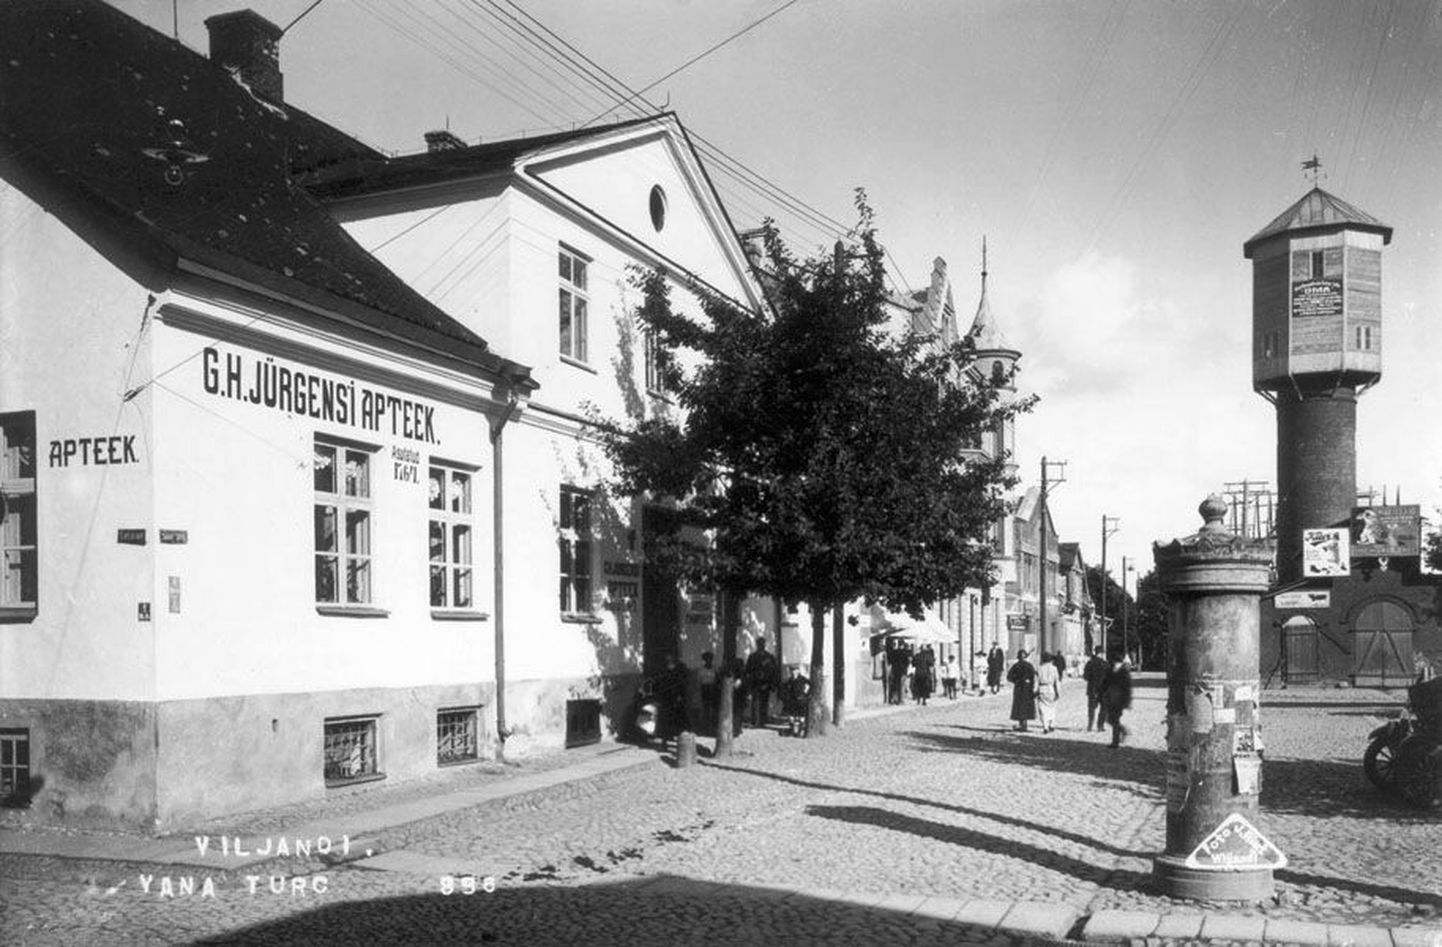 Viljandi vana turuplatsi nurgal kivimajas paiknenud apteek kuulus 1926. aastal proviisor Gottlieb Hermann Jürgensile.